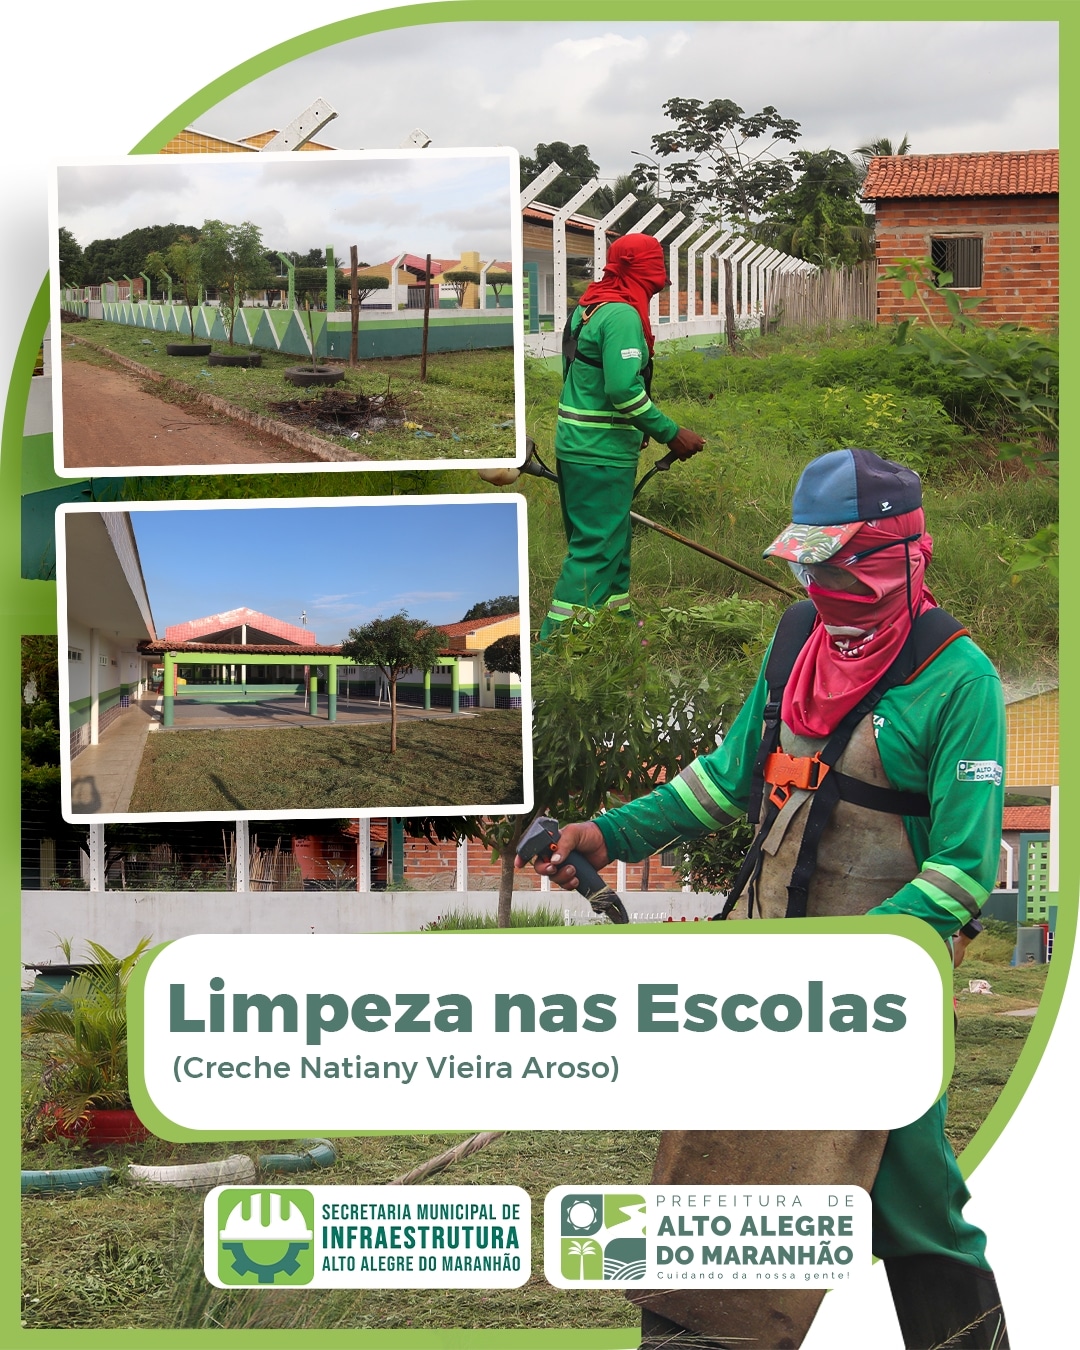 Limpeza nas Escolas: Prefeitura Municipal de Alto Alegre do Maranhão